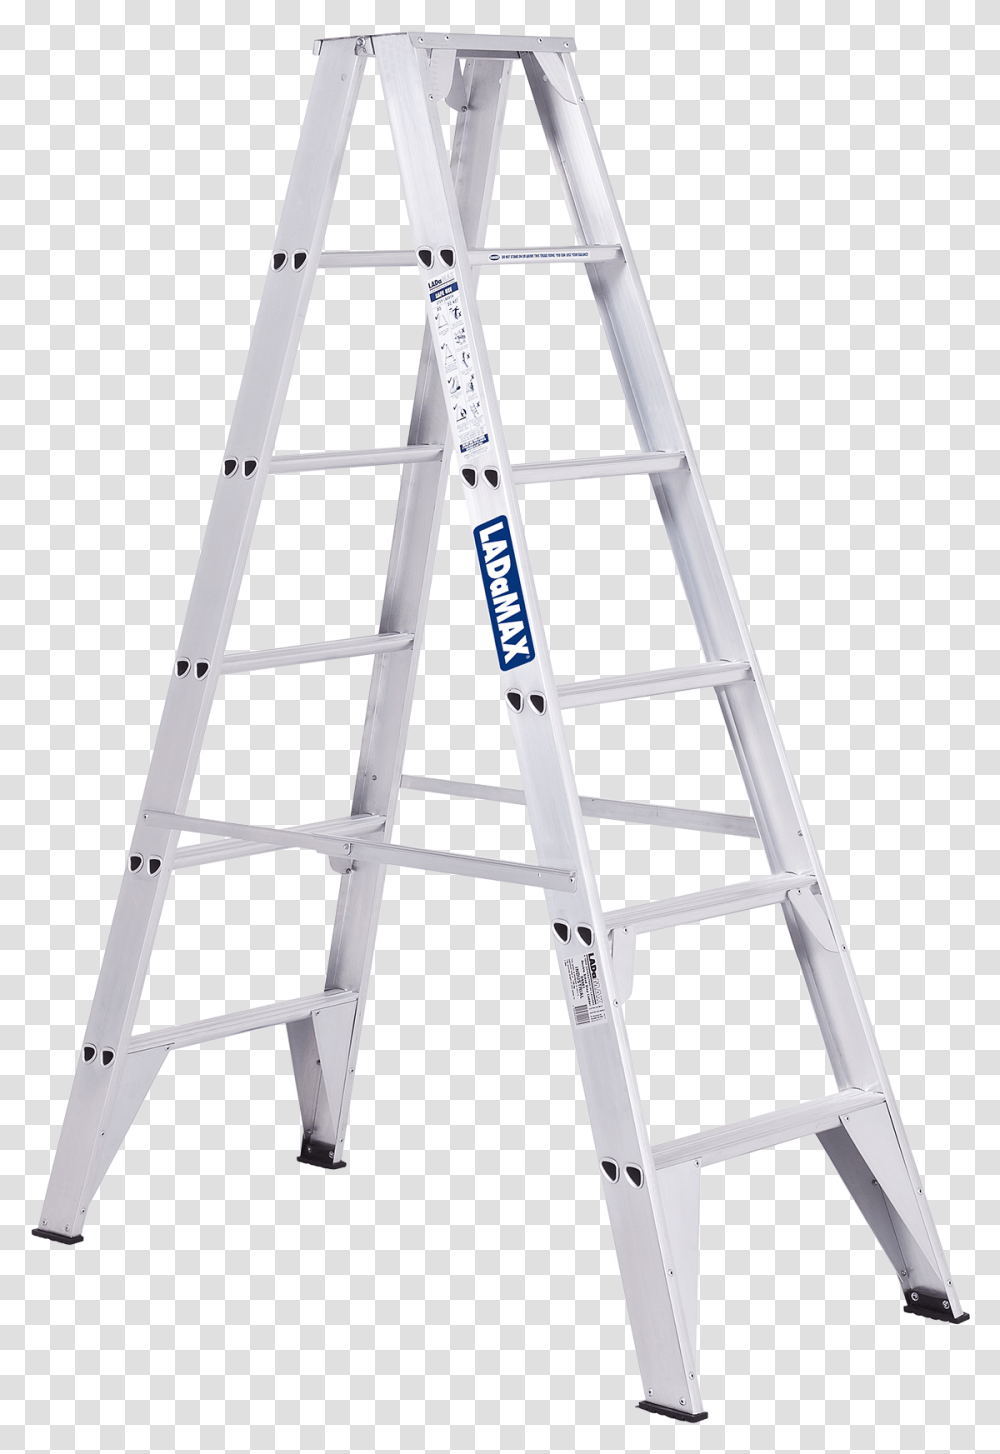 Ladder Image File Ladder, Furniture, Fence, Stand, Shop Transparent Png